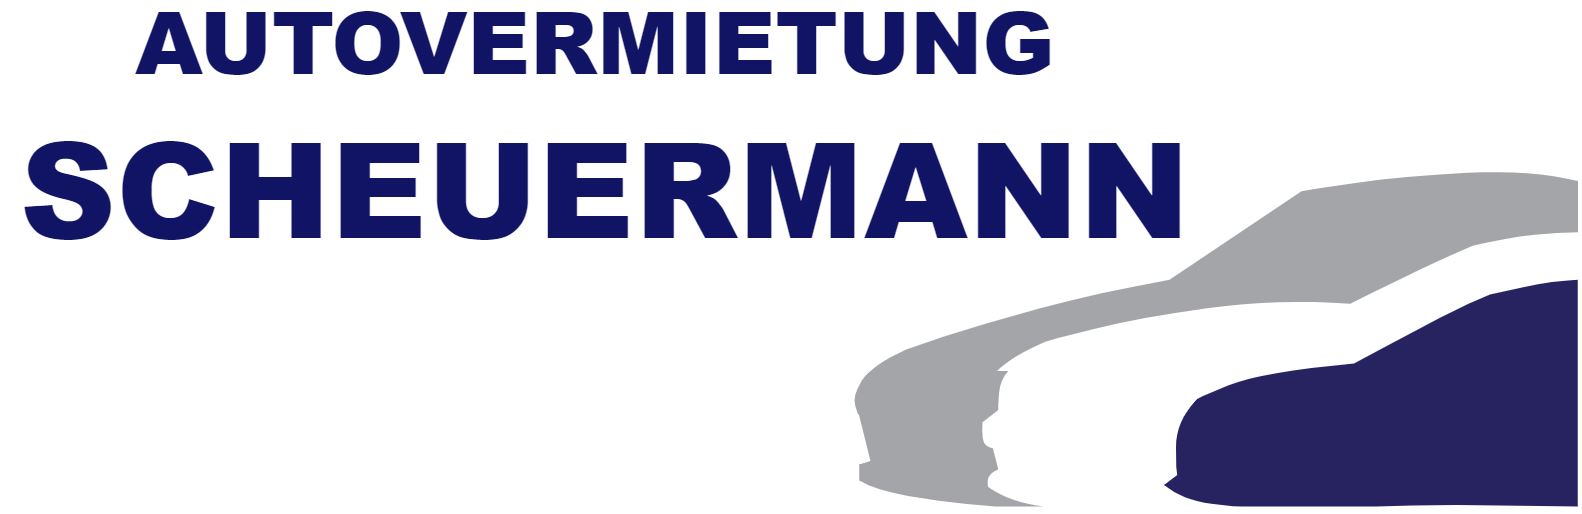 Autovermietung Scheuermann